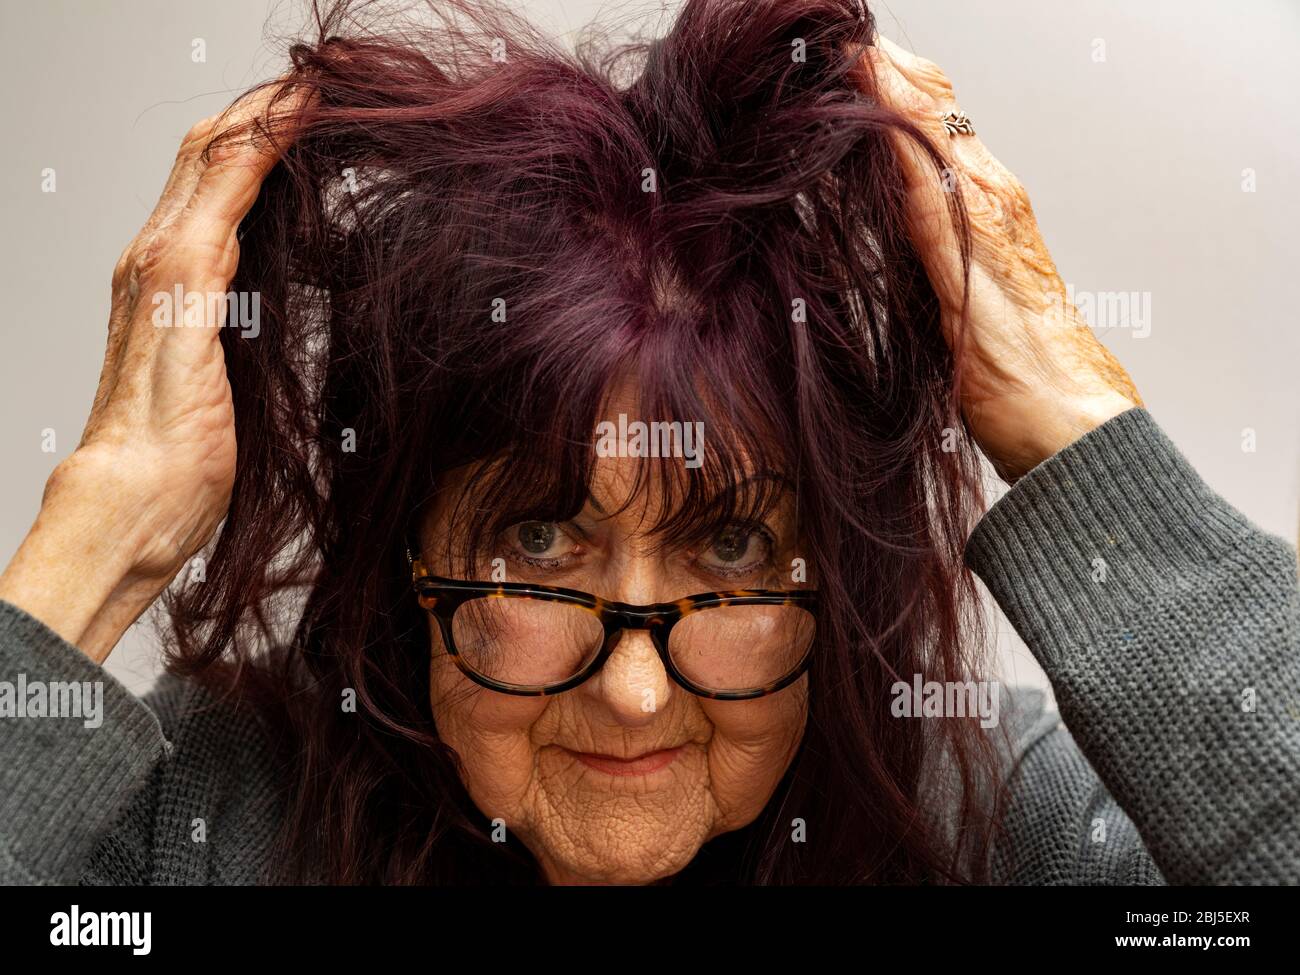 Bad hair day during the Coronavirus lockdown 2020 Stock Photo